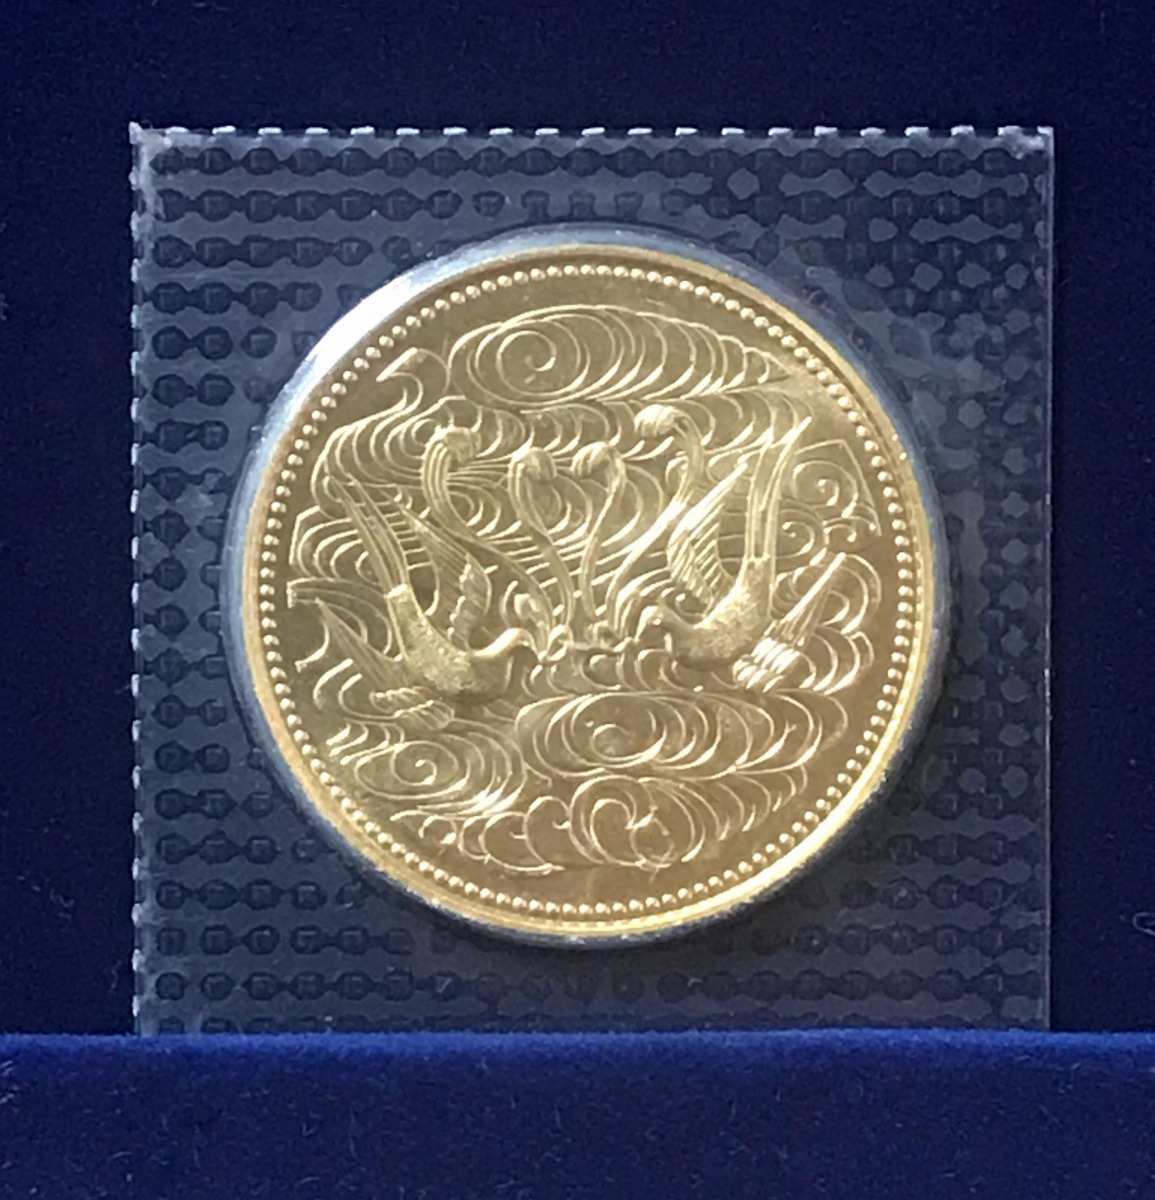 K180 昭和天皇御在位60年記念 1986年(昭和61年) 1万円銀貨 記念硬貨 